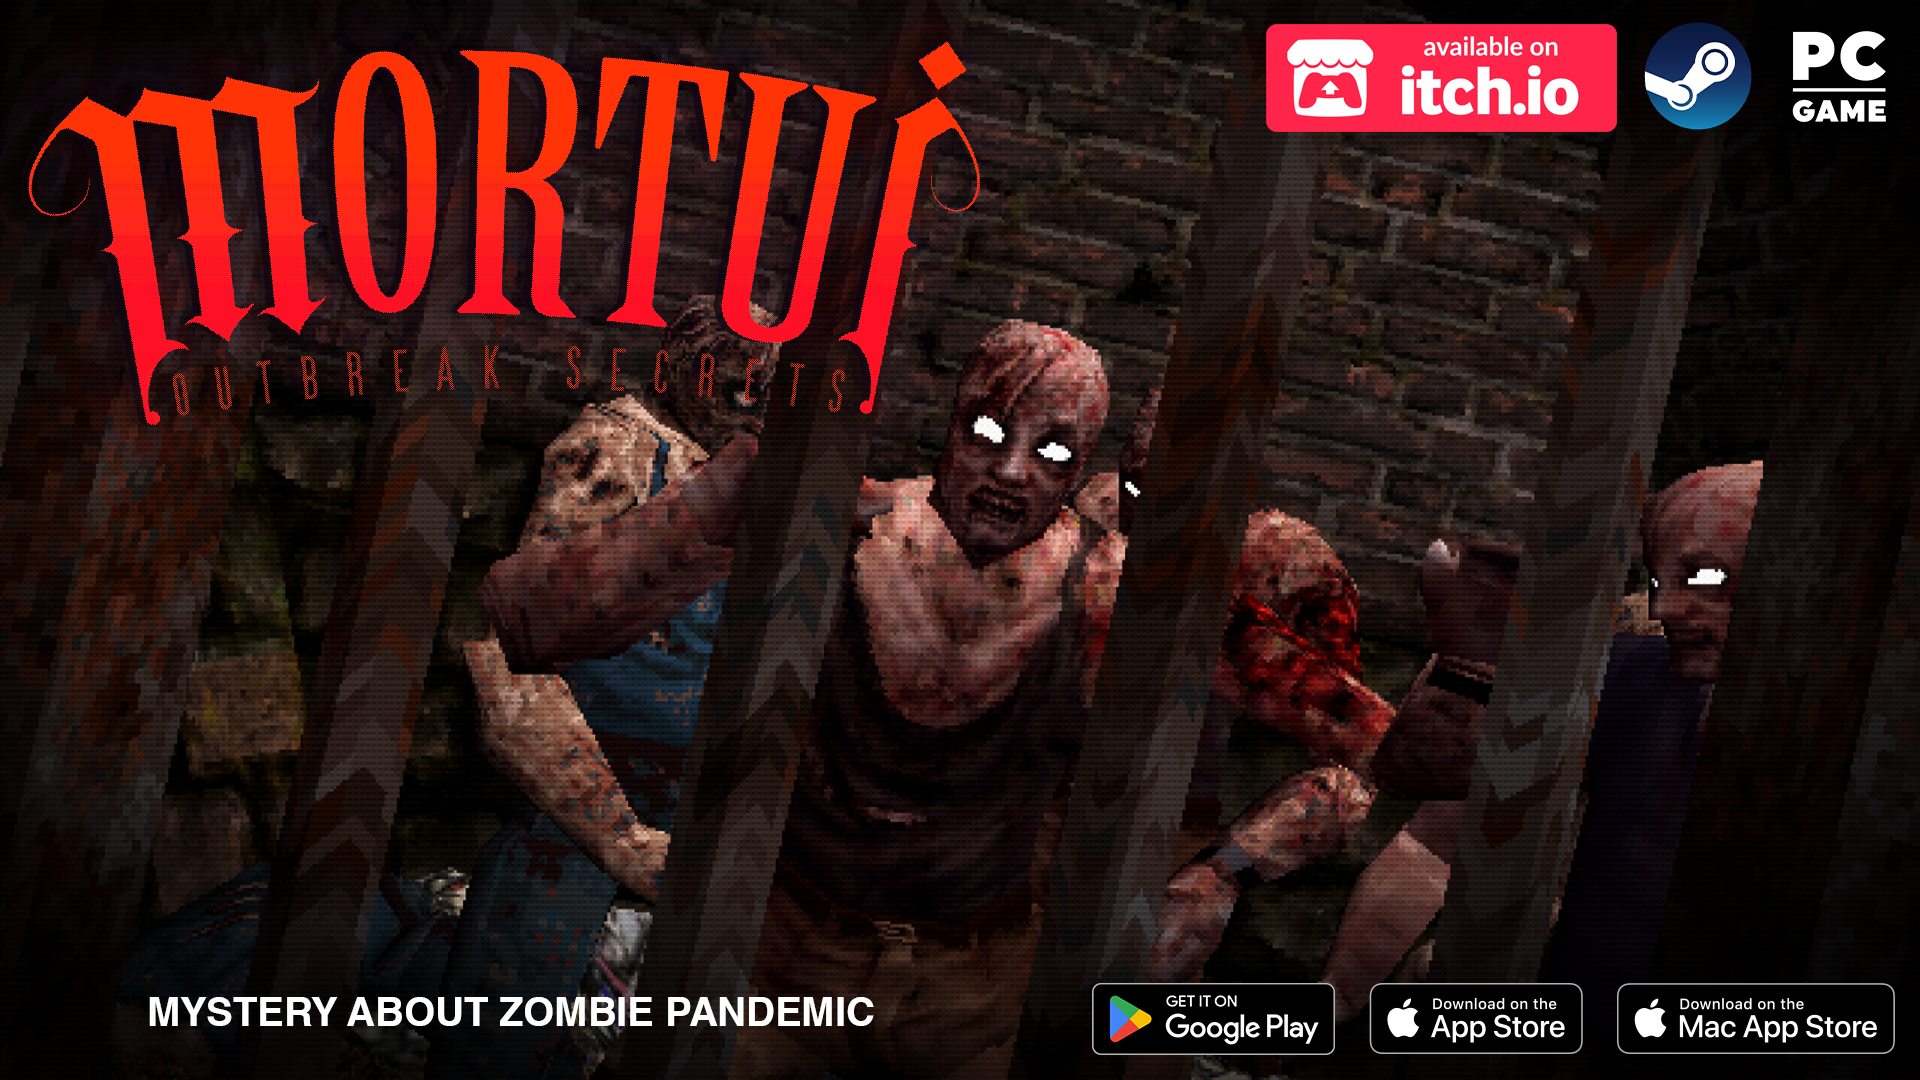 Mortui: Outbreak Secrets - Demo (Android)